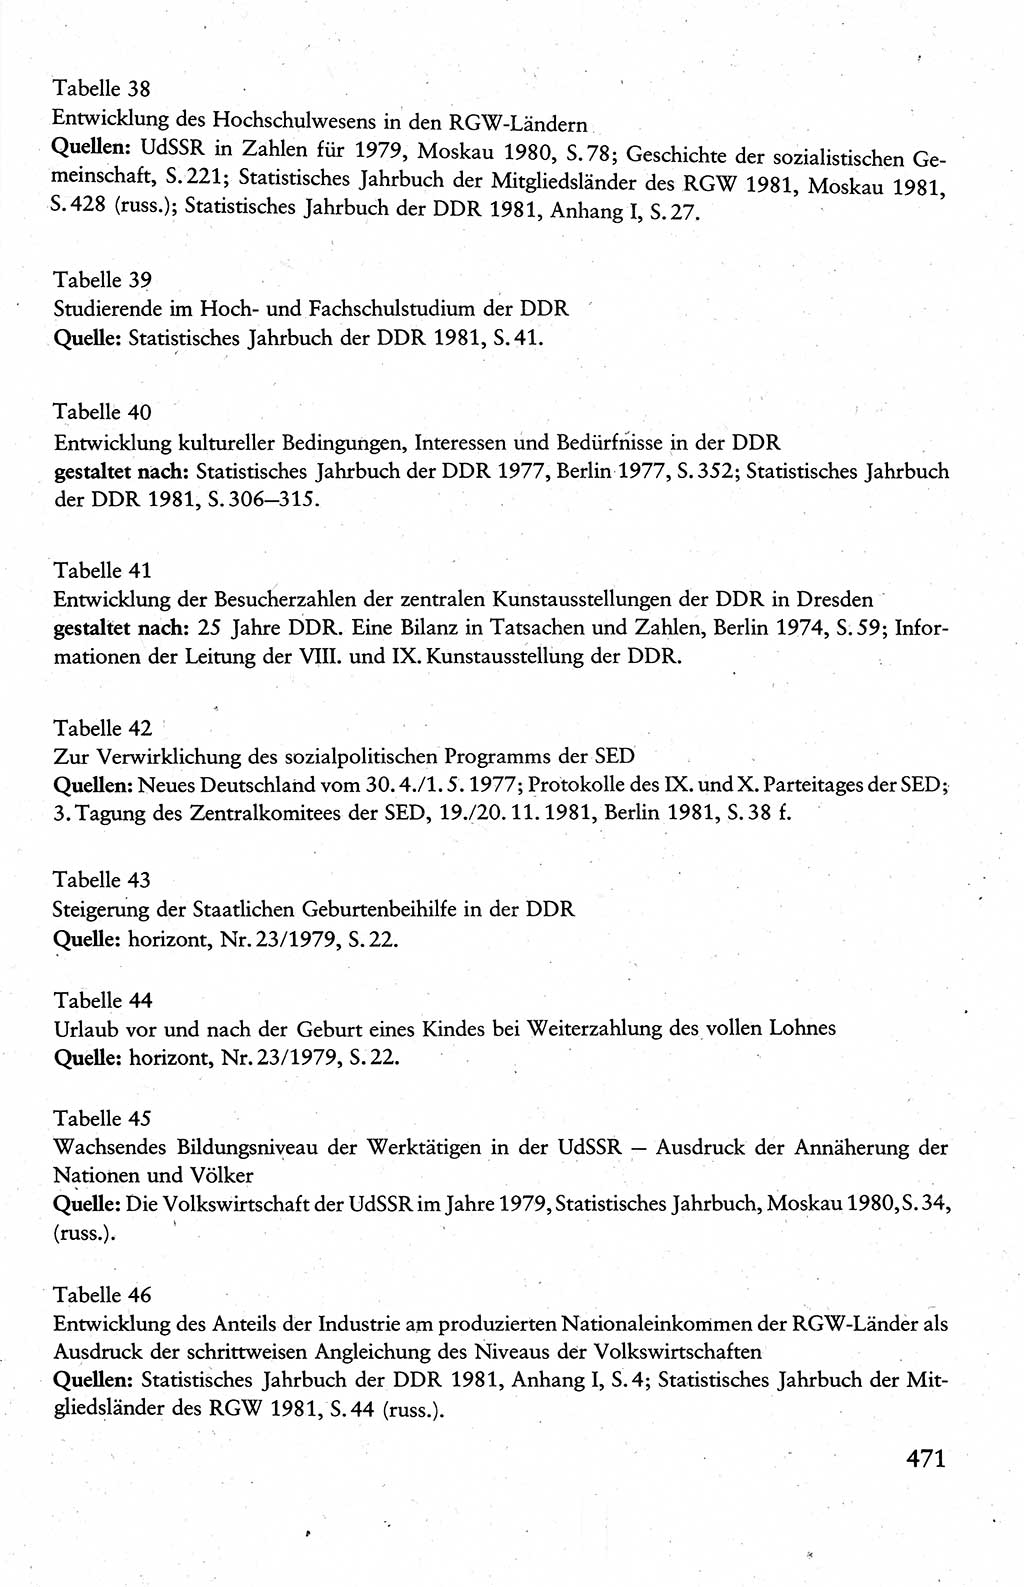 Wissenschaftlicher Kommunismus [Deutsche Demokratische Republik (DDR)], Lehrbuch für das marxistisch-leninistische Grundlagenstudium 1983, Seite 471 (Wiss. Komm. DDR Lb. 1983, S. 471)